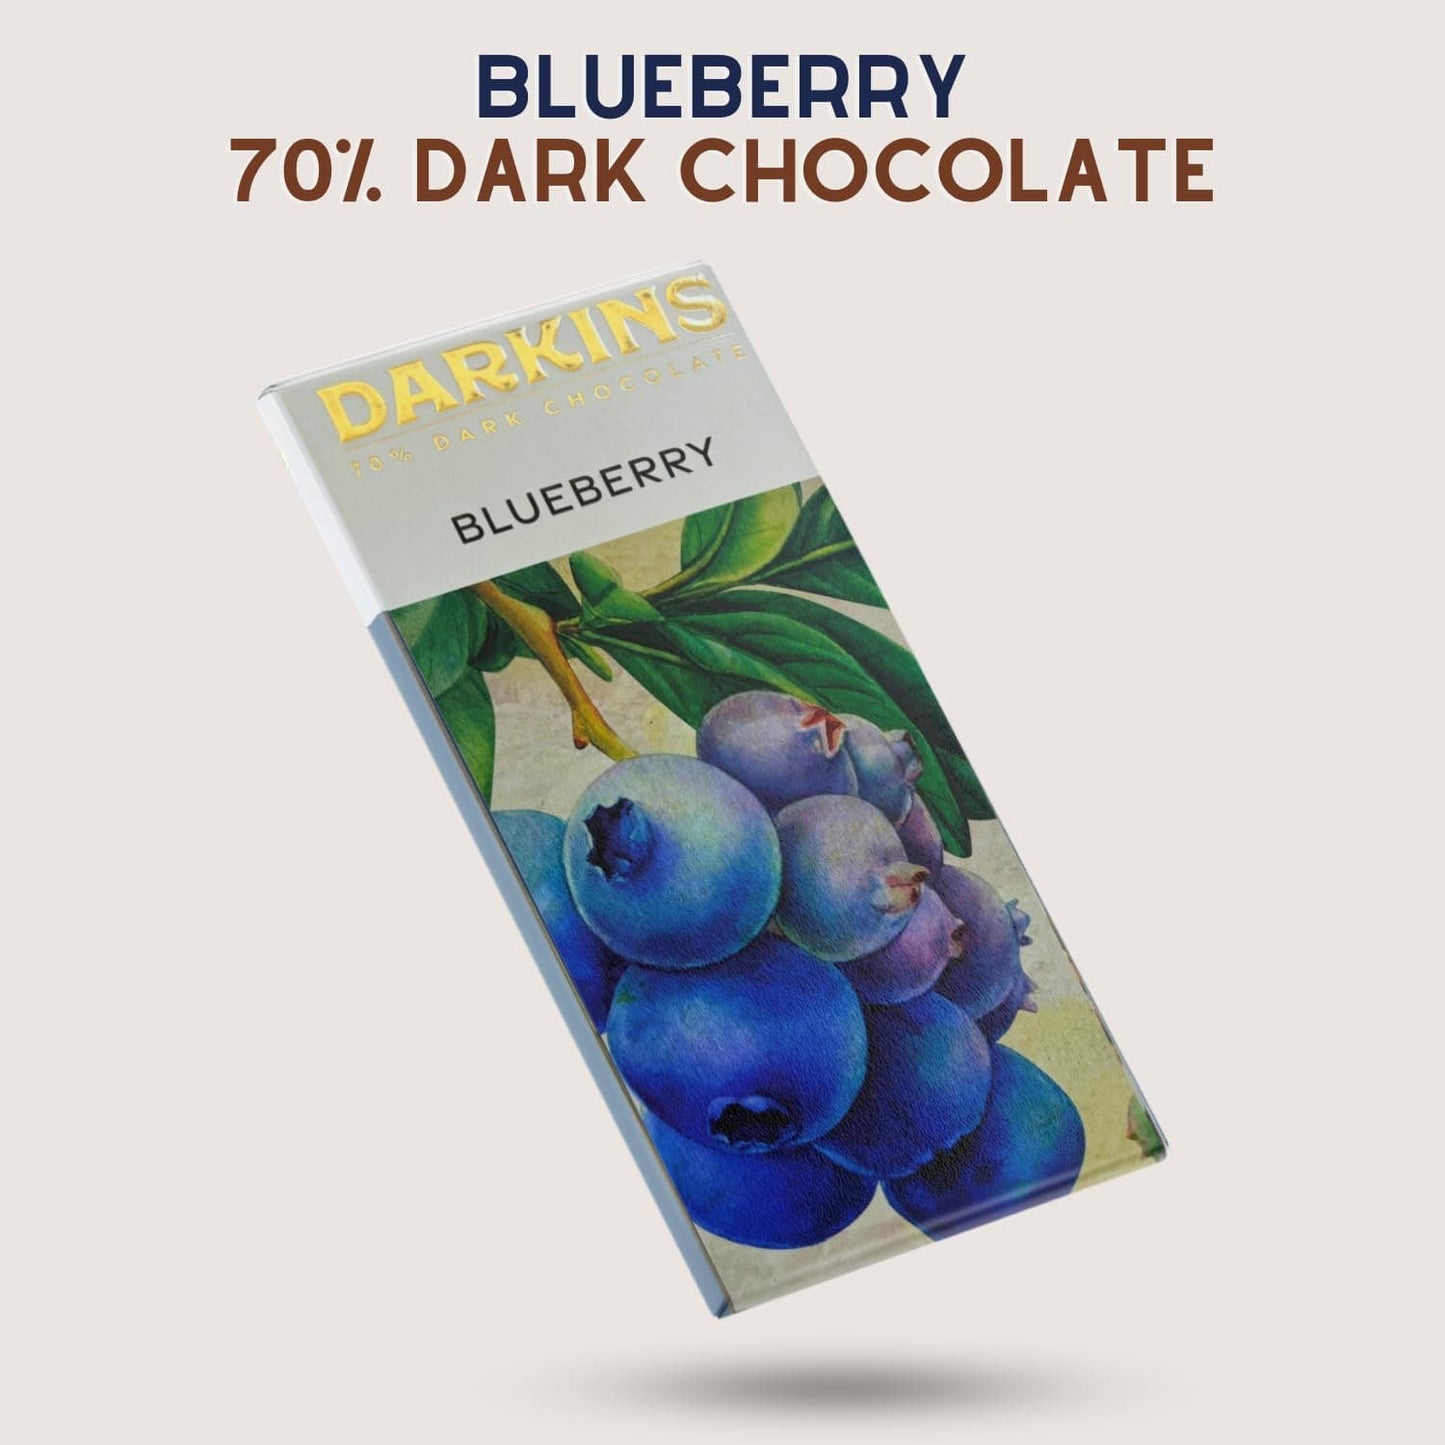 DARKINS 70% Dark Chocolate With Blueberries | 3x50g | 50g Each Pack of 3